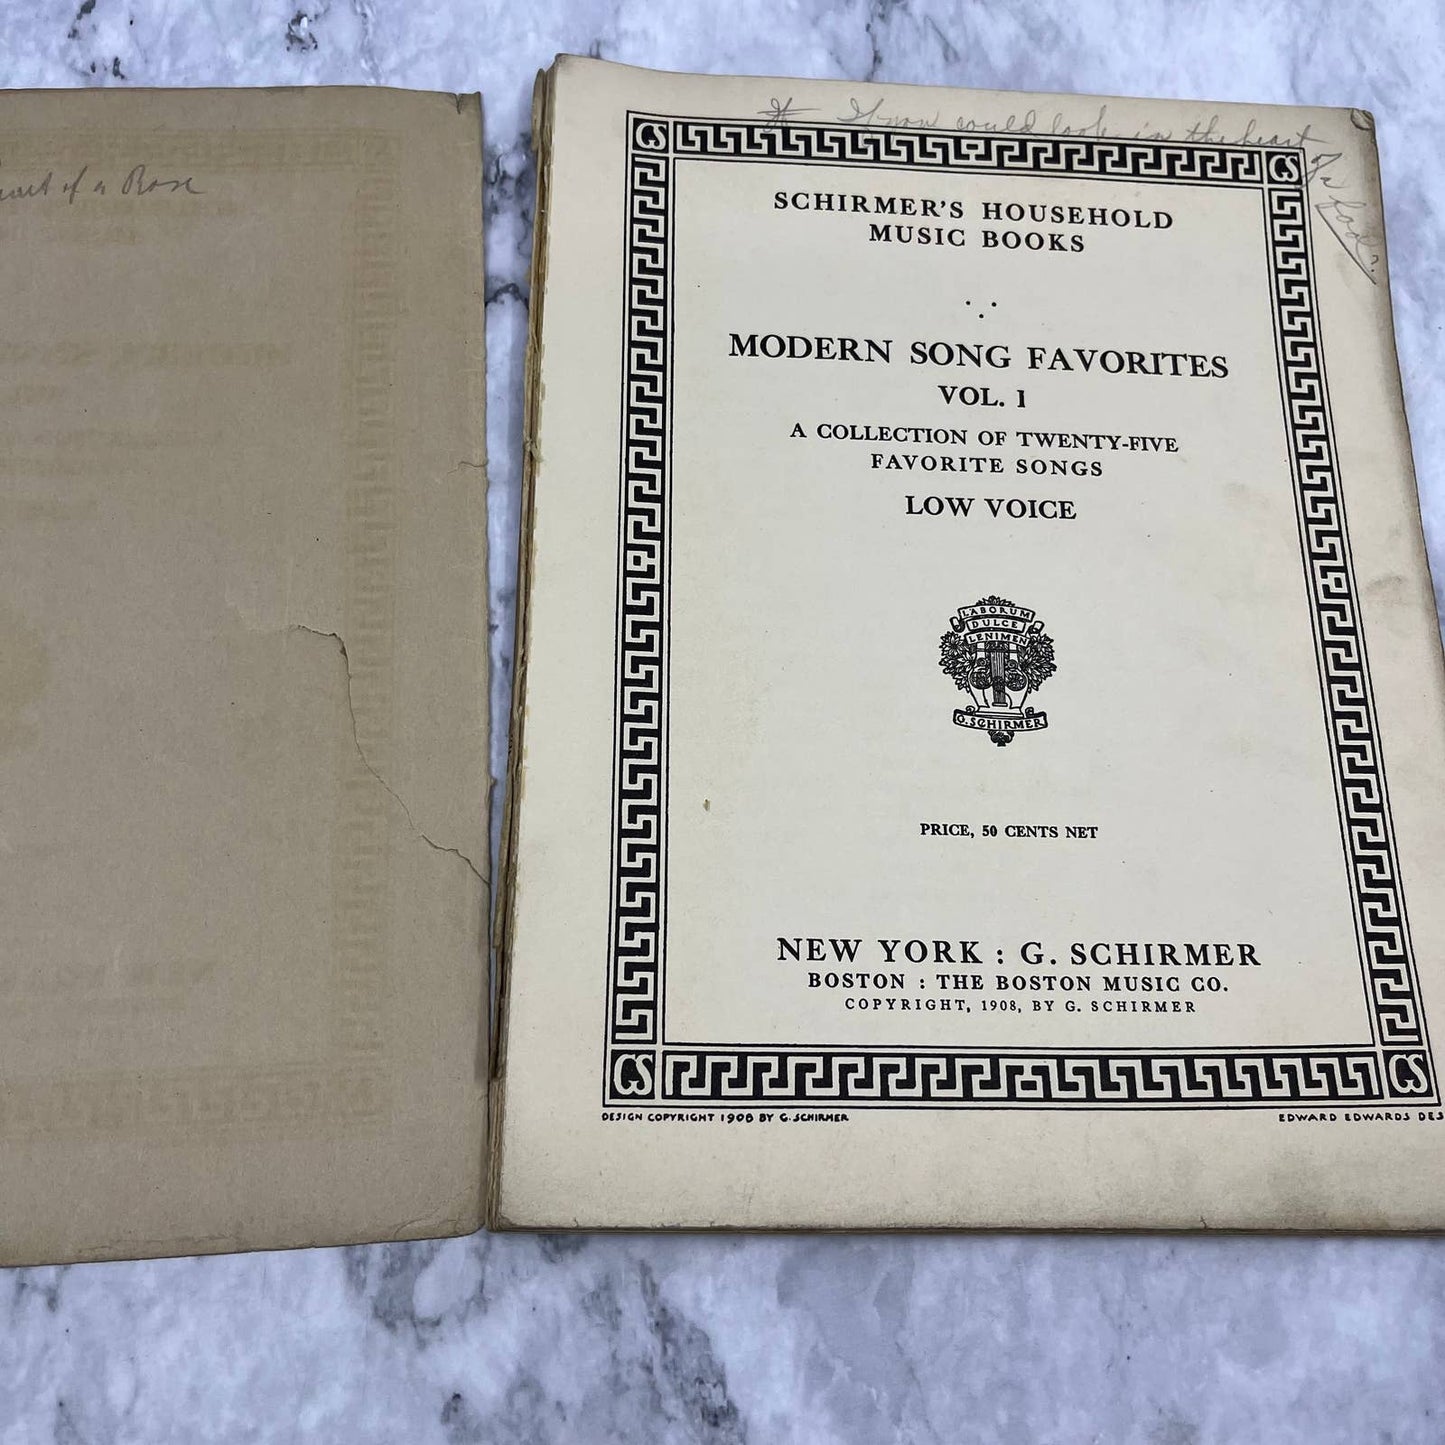 1908 Schirmer's Household Music Books Modern Song Favorites Vol. 1 TH5